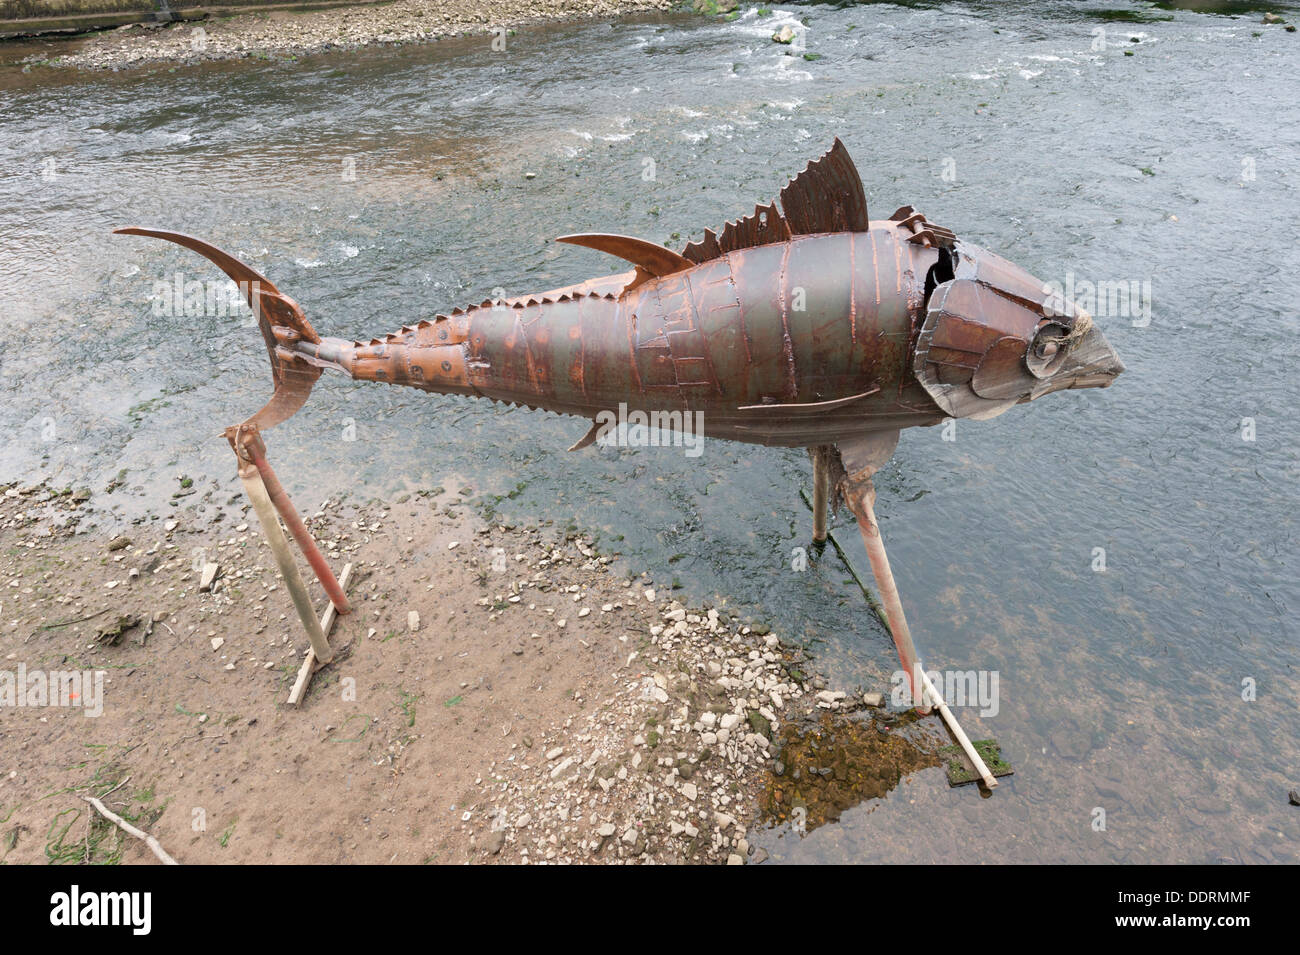 Grand poisson métal sculpture dans la rivière Odet Quimper Bretagne France Banque D'Images